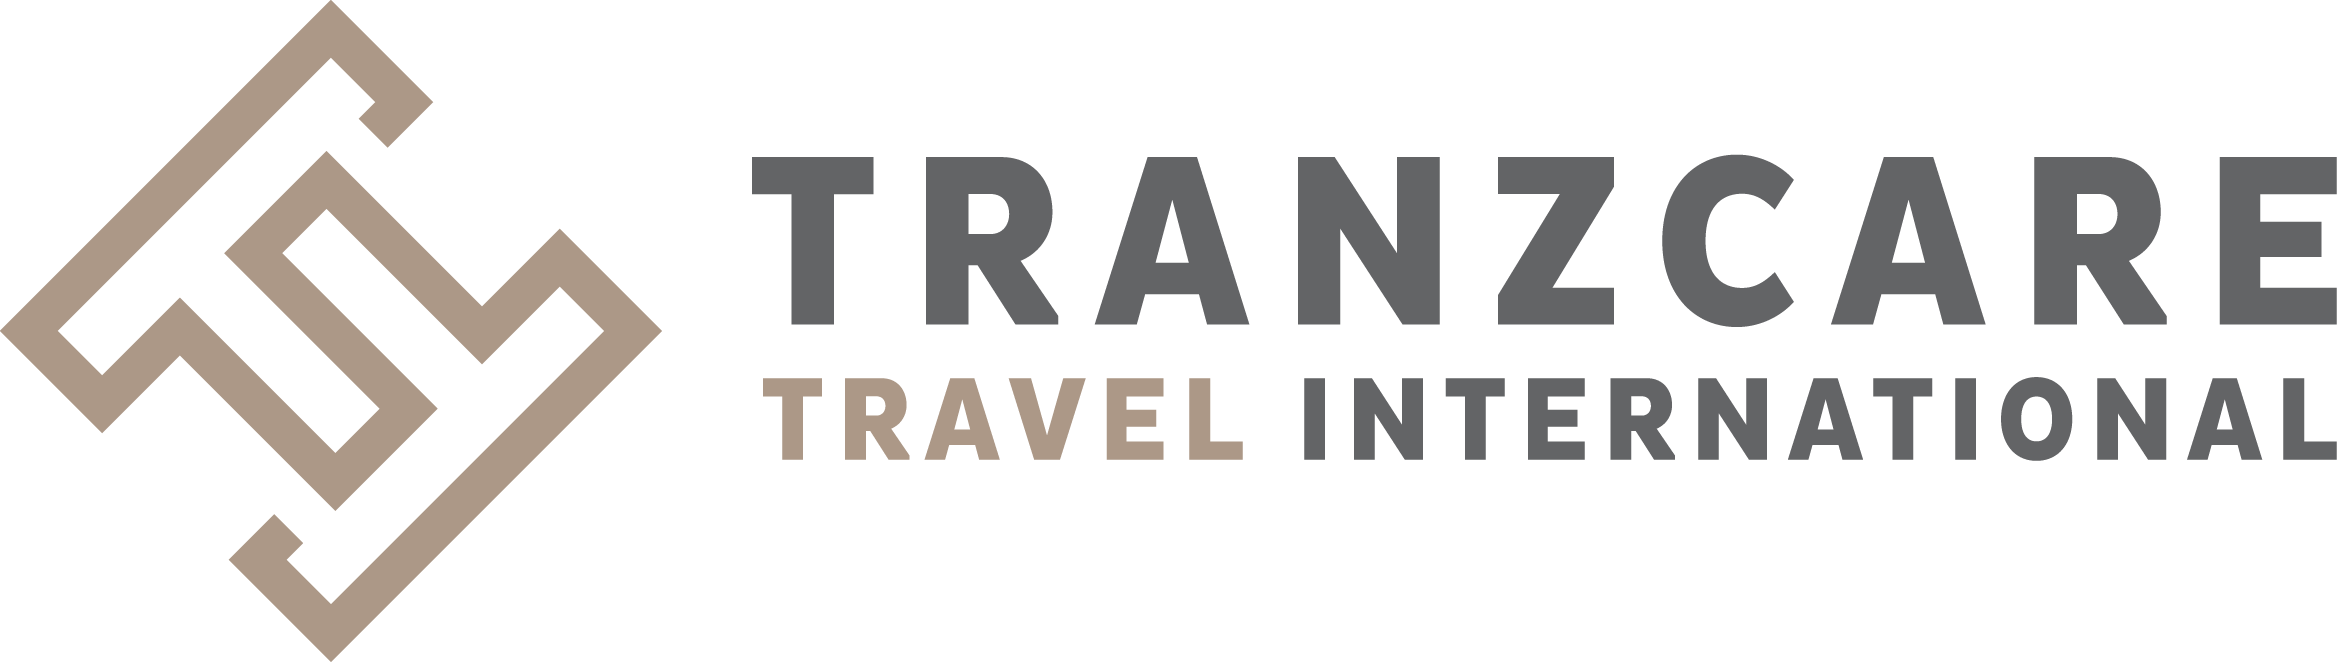 Tranzcare Travel